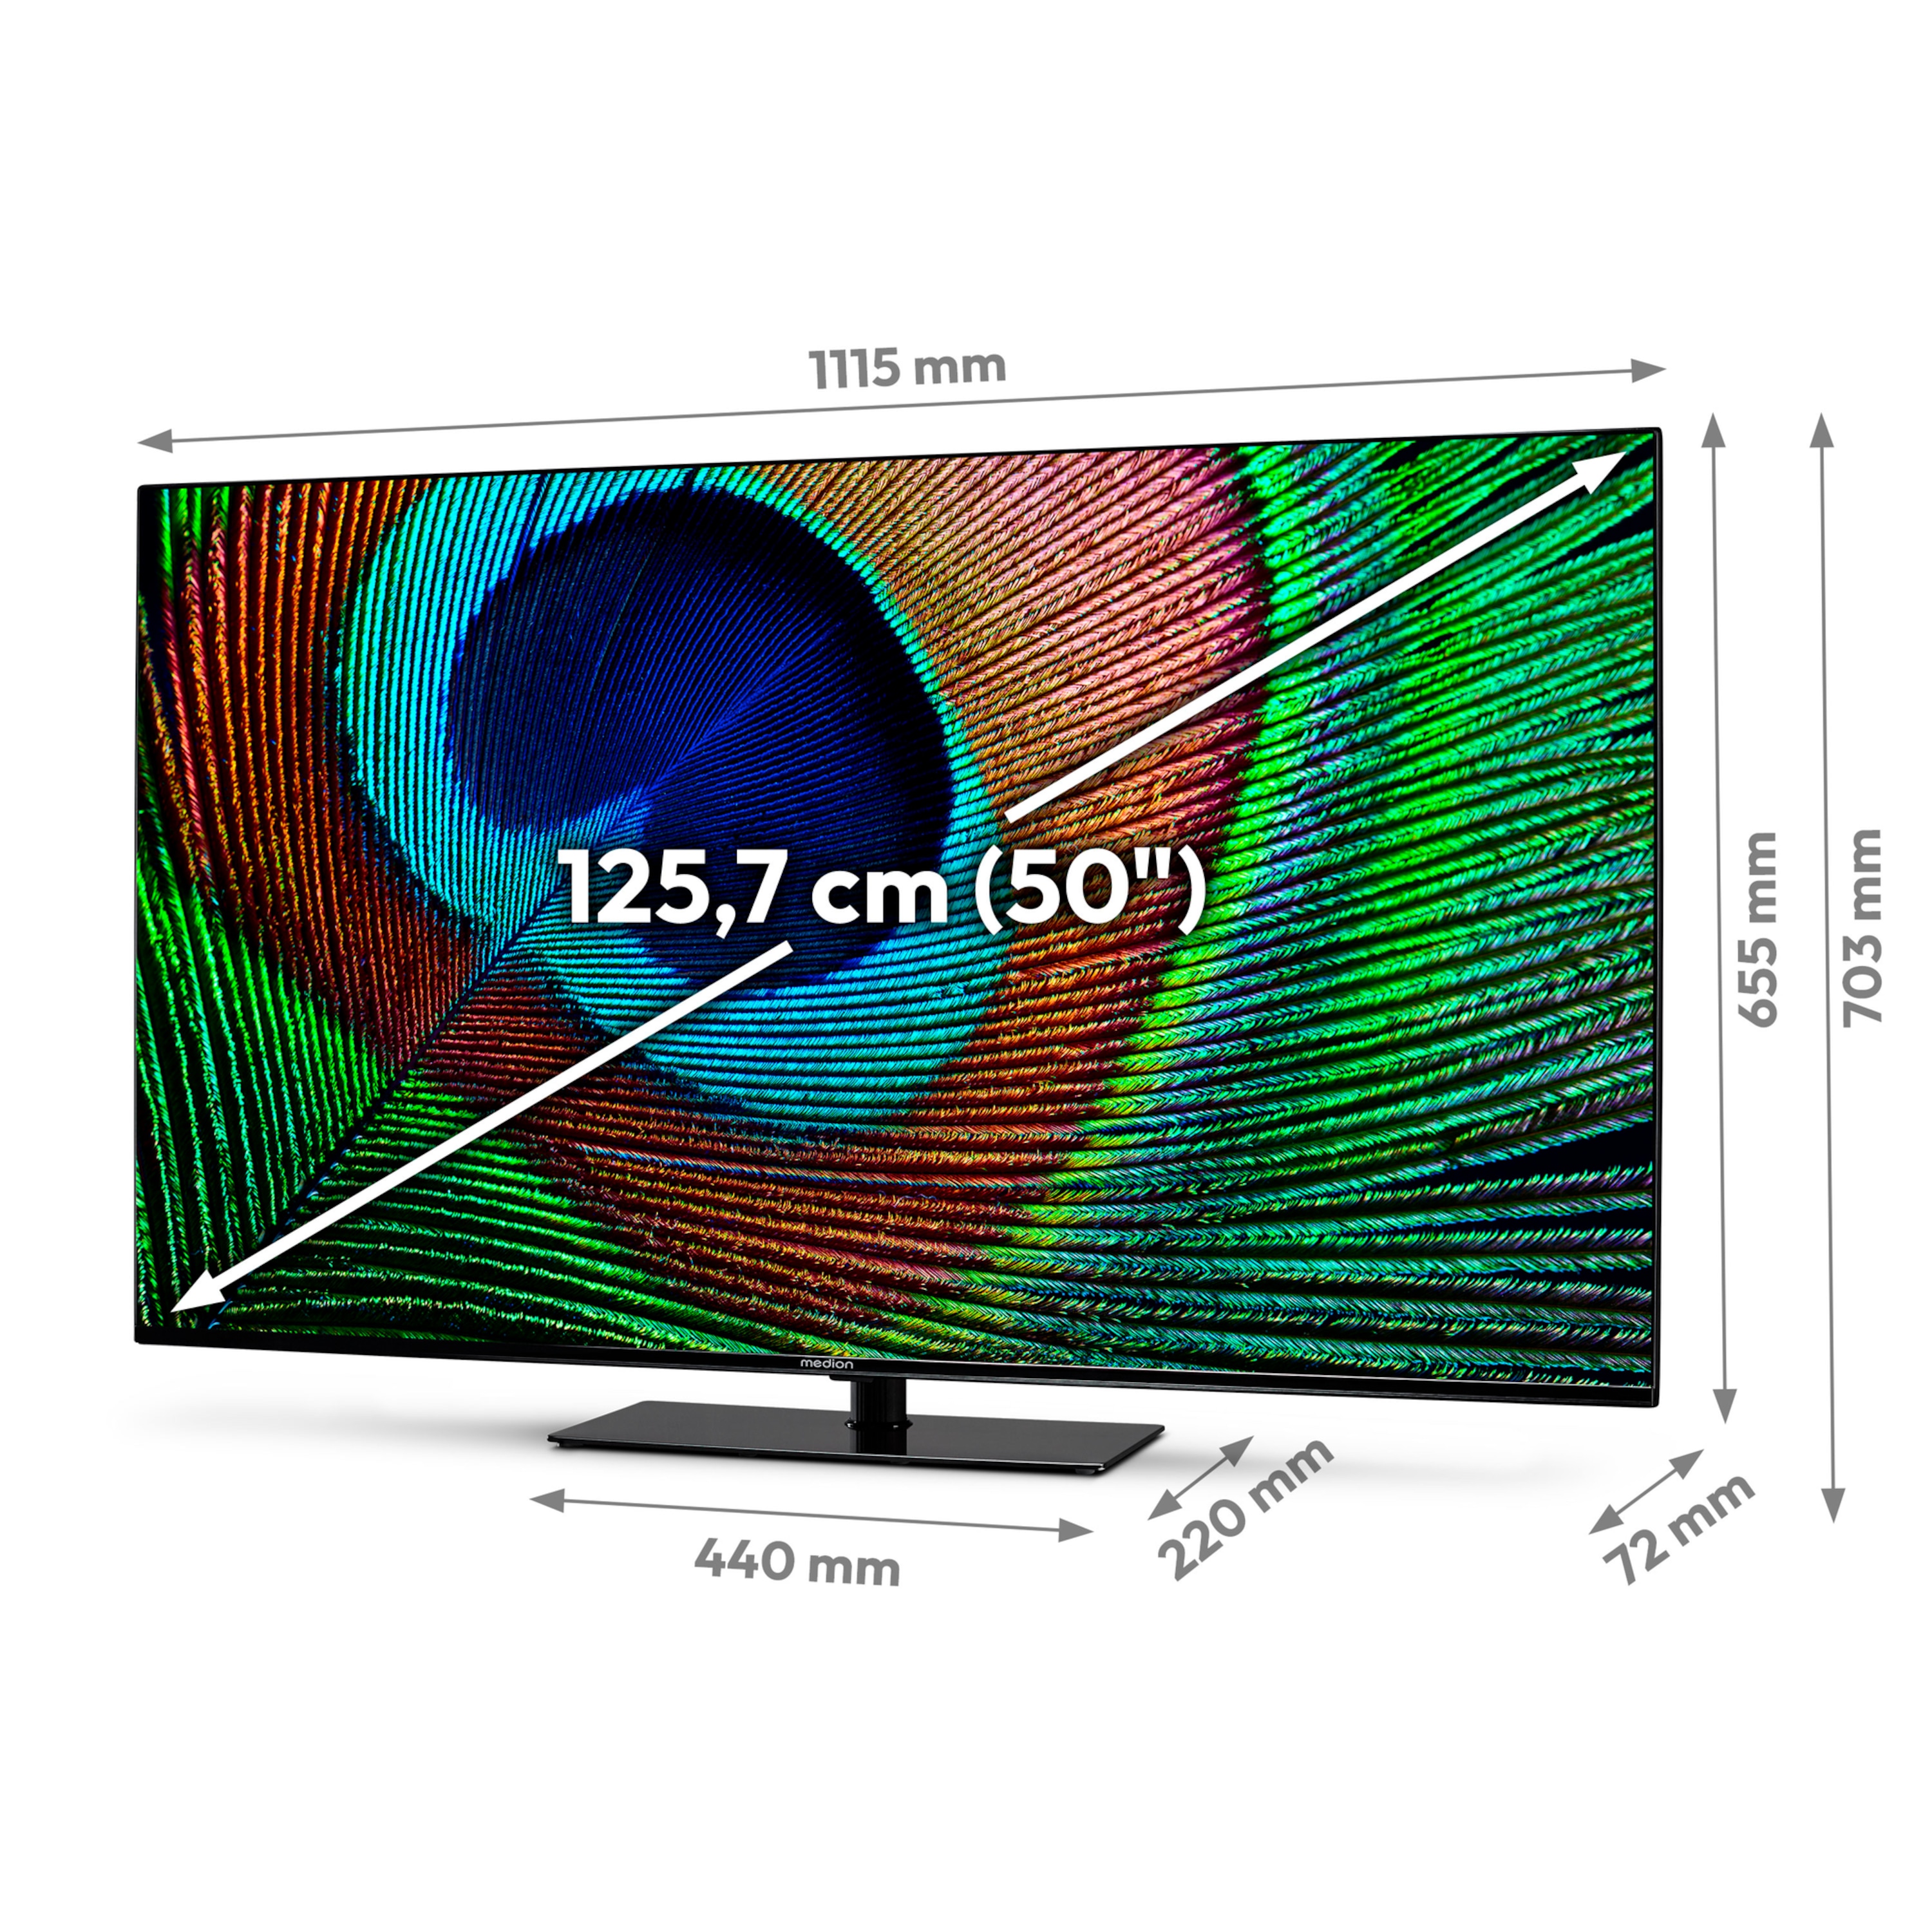 MEDION® LIFE® X15008 (MD 30881) Android TV™, 125,7 cm (50'') Ultra HD Smart-TV + Soundbar 2.1.  (MD45001)  - ARTIKELSET